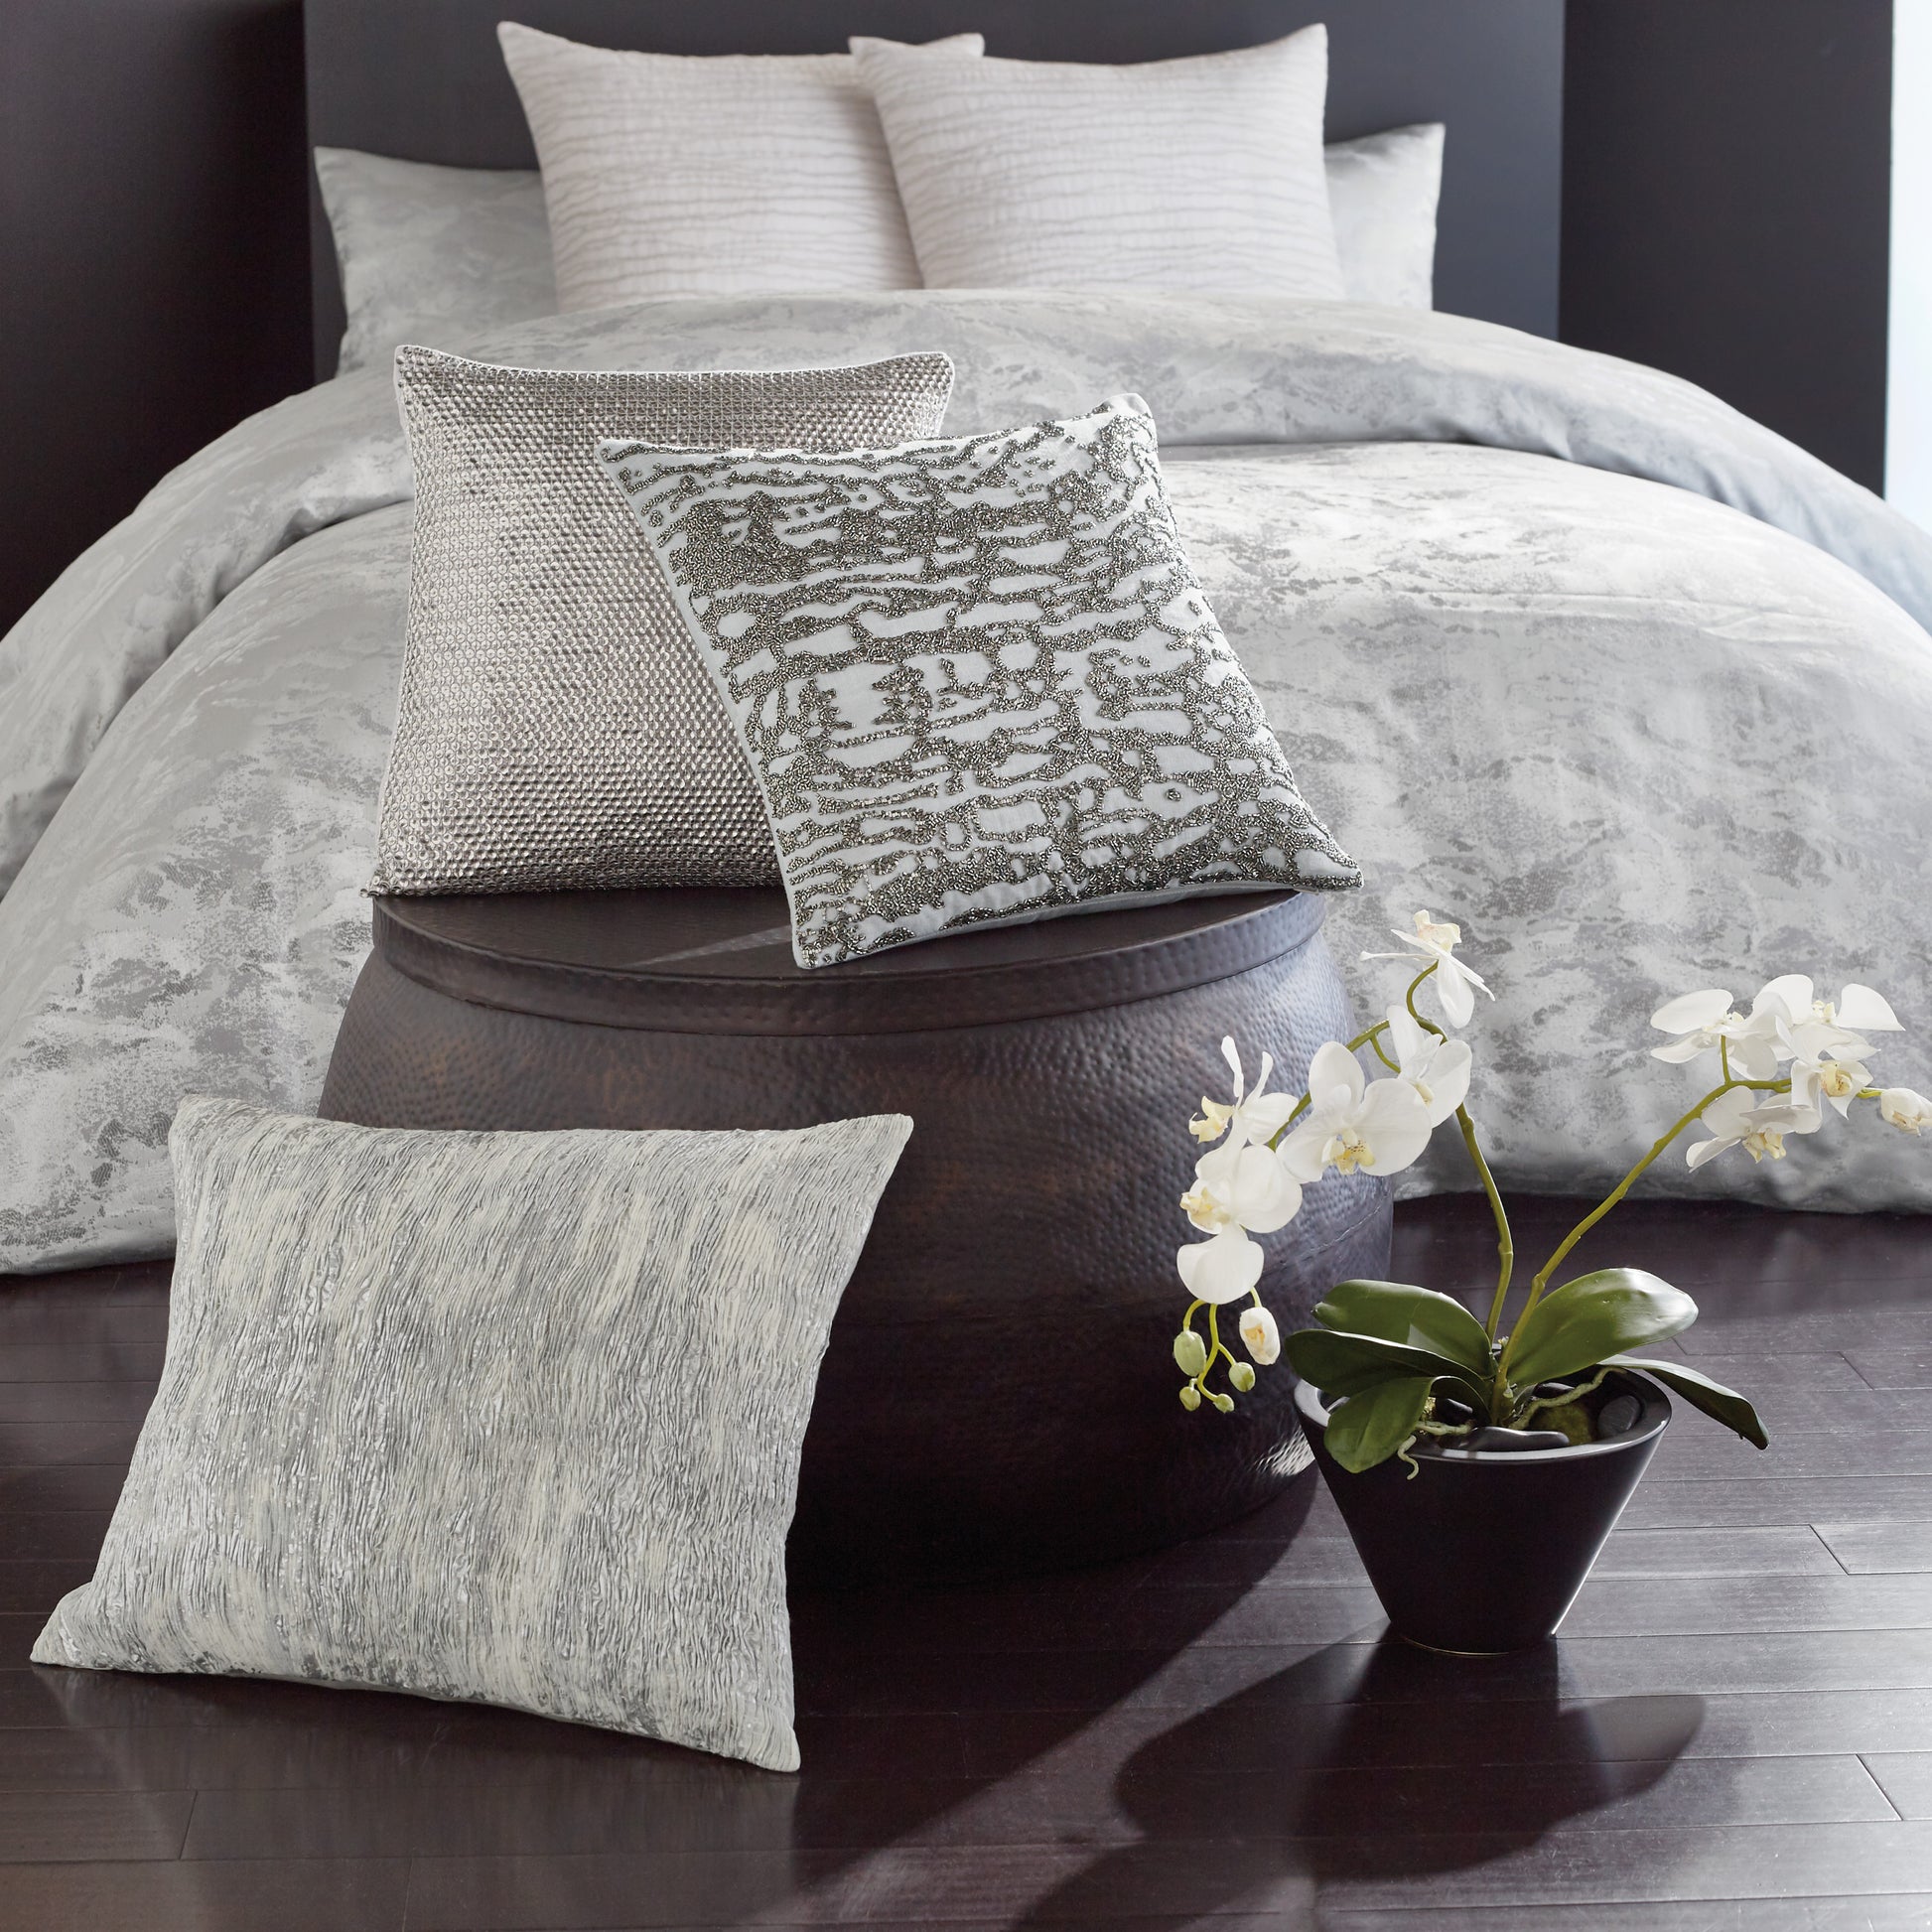 Donna Karan Luna Beaded Decorative Pillow